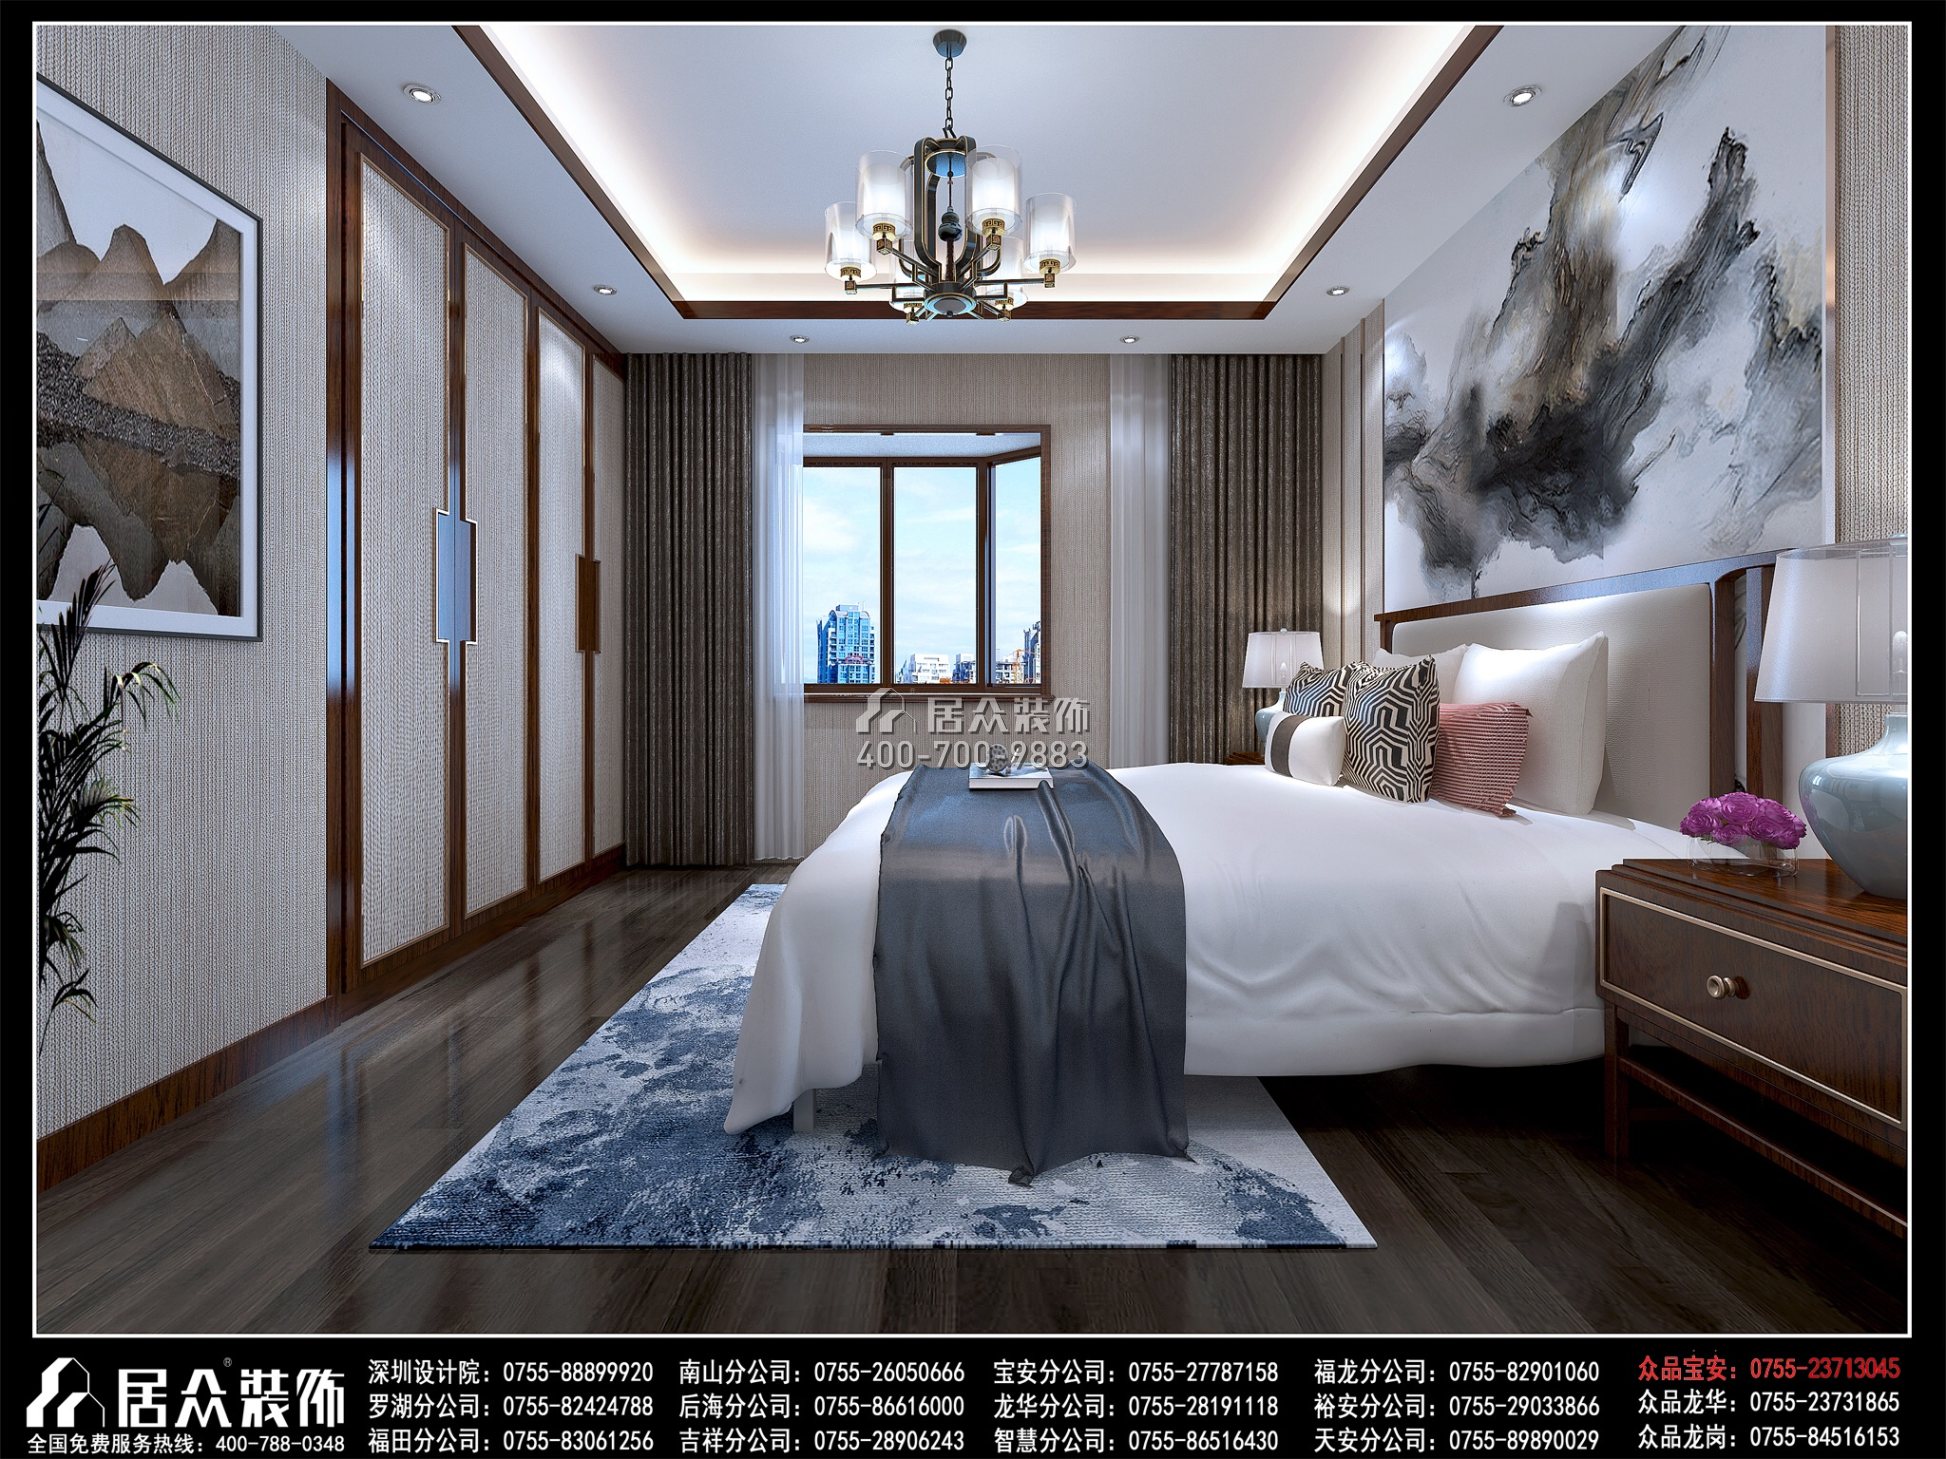 锦河苑208平方米中式风格复式户型装修效果图